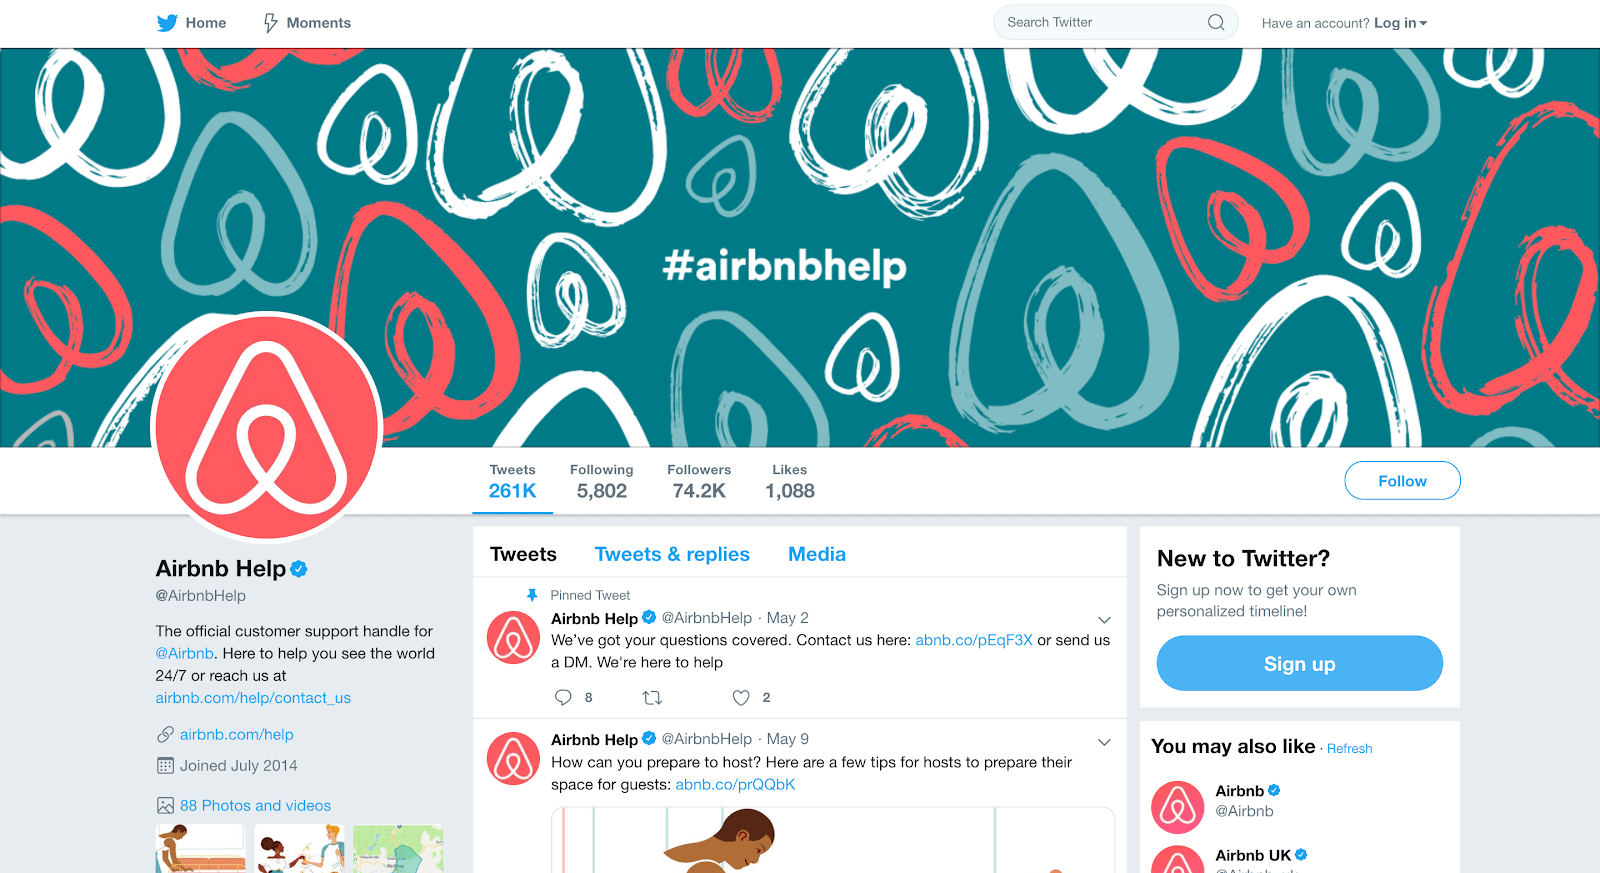 Número de teléfono de Airbnb: la página de Twitter de Airbnb